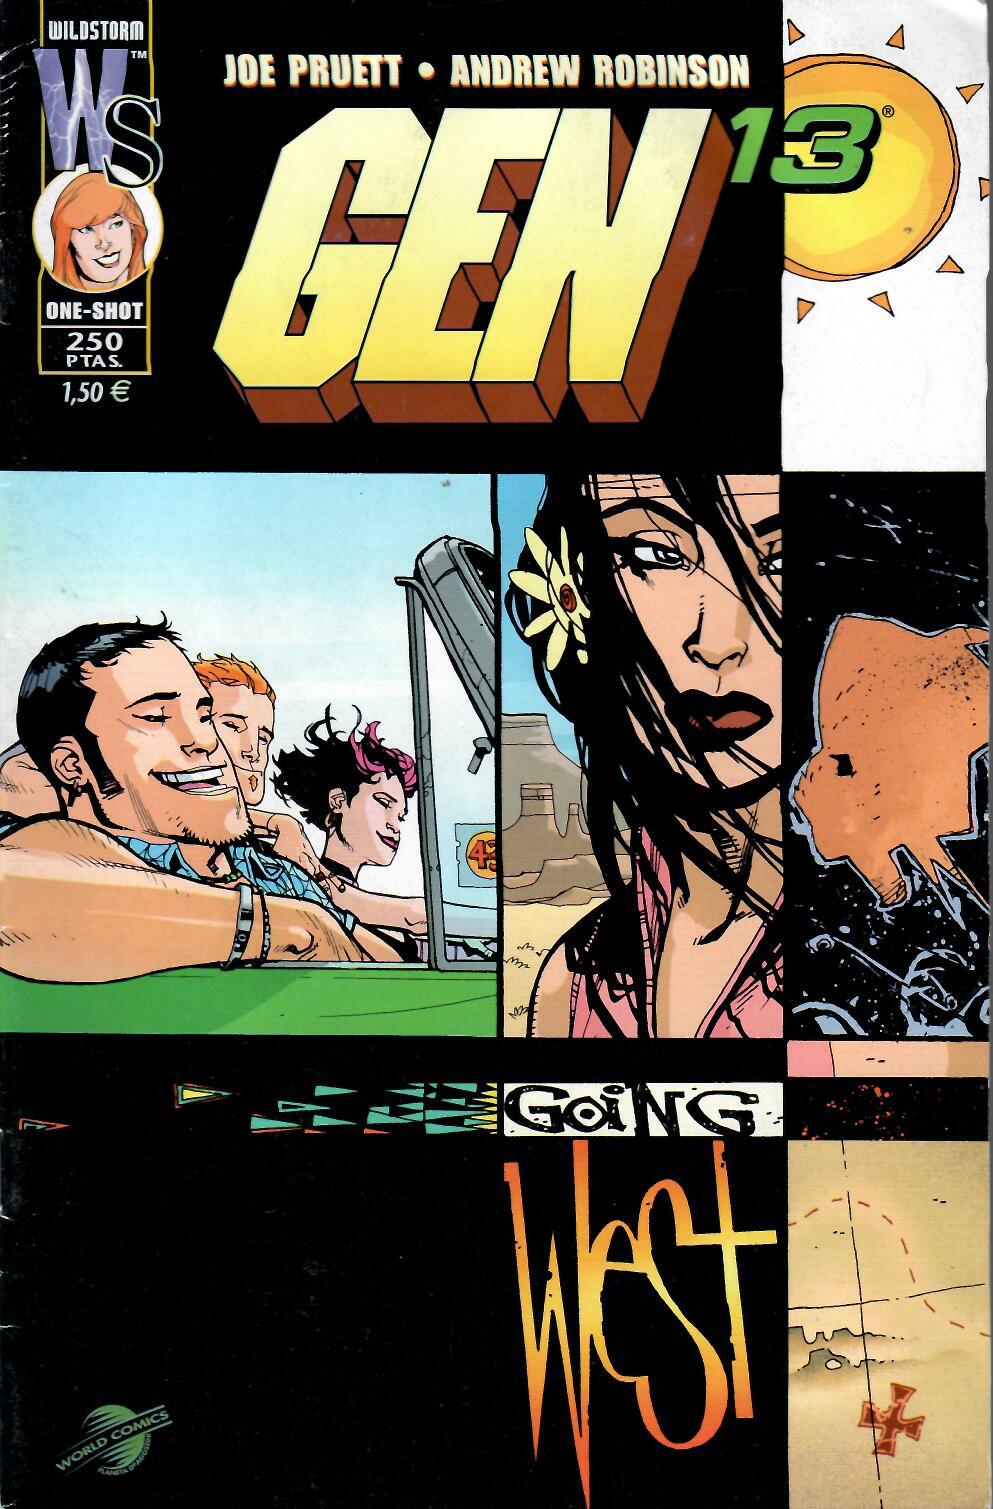 Gen 13. Going West. World Comics 2000. One-Shot